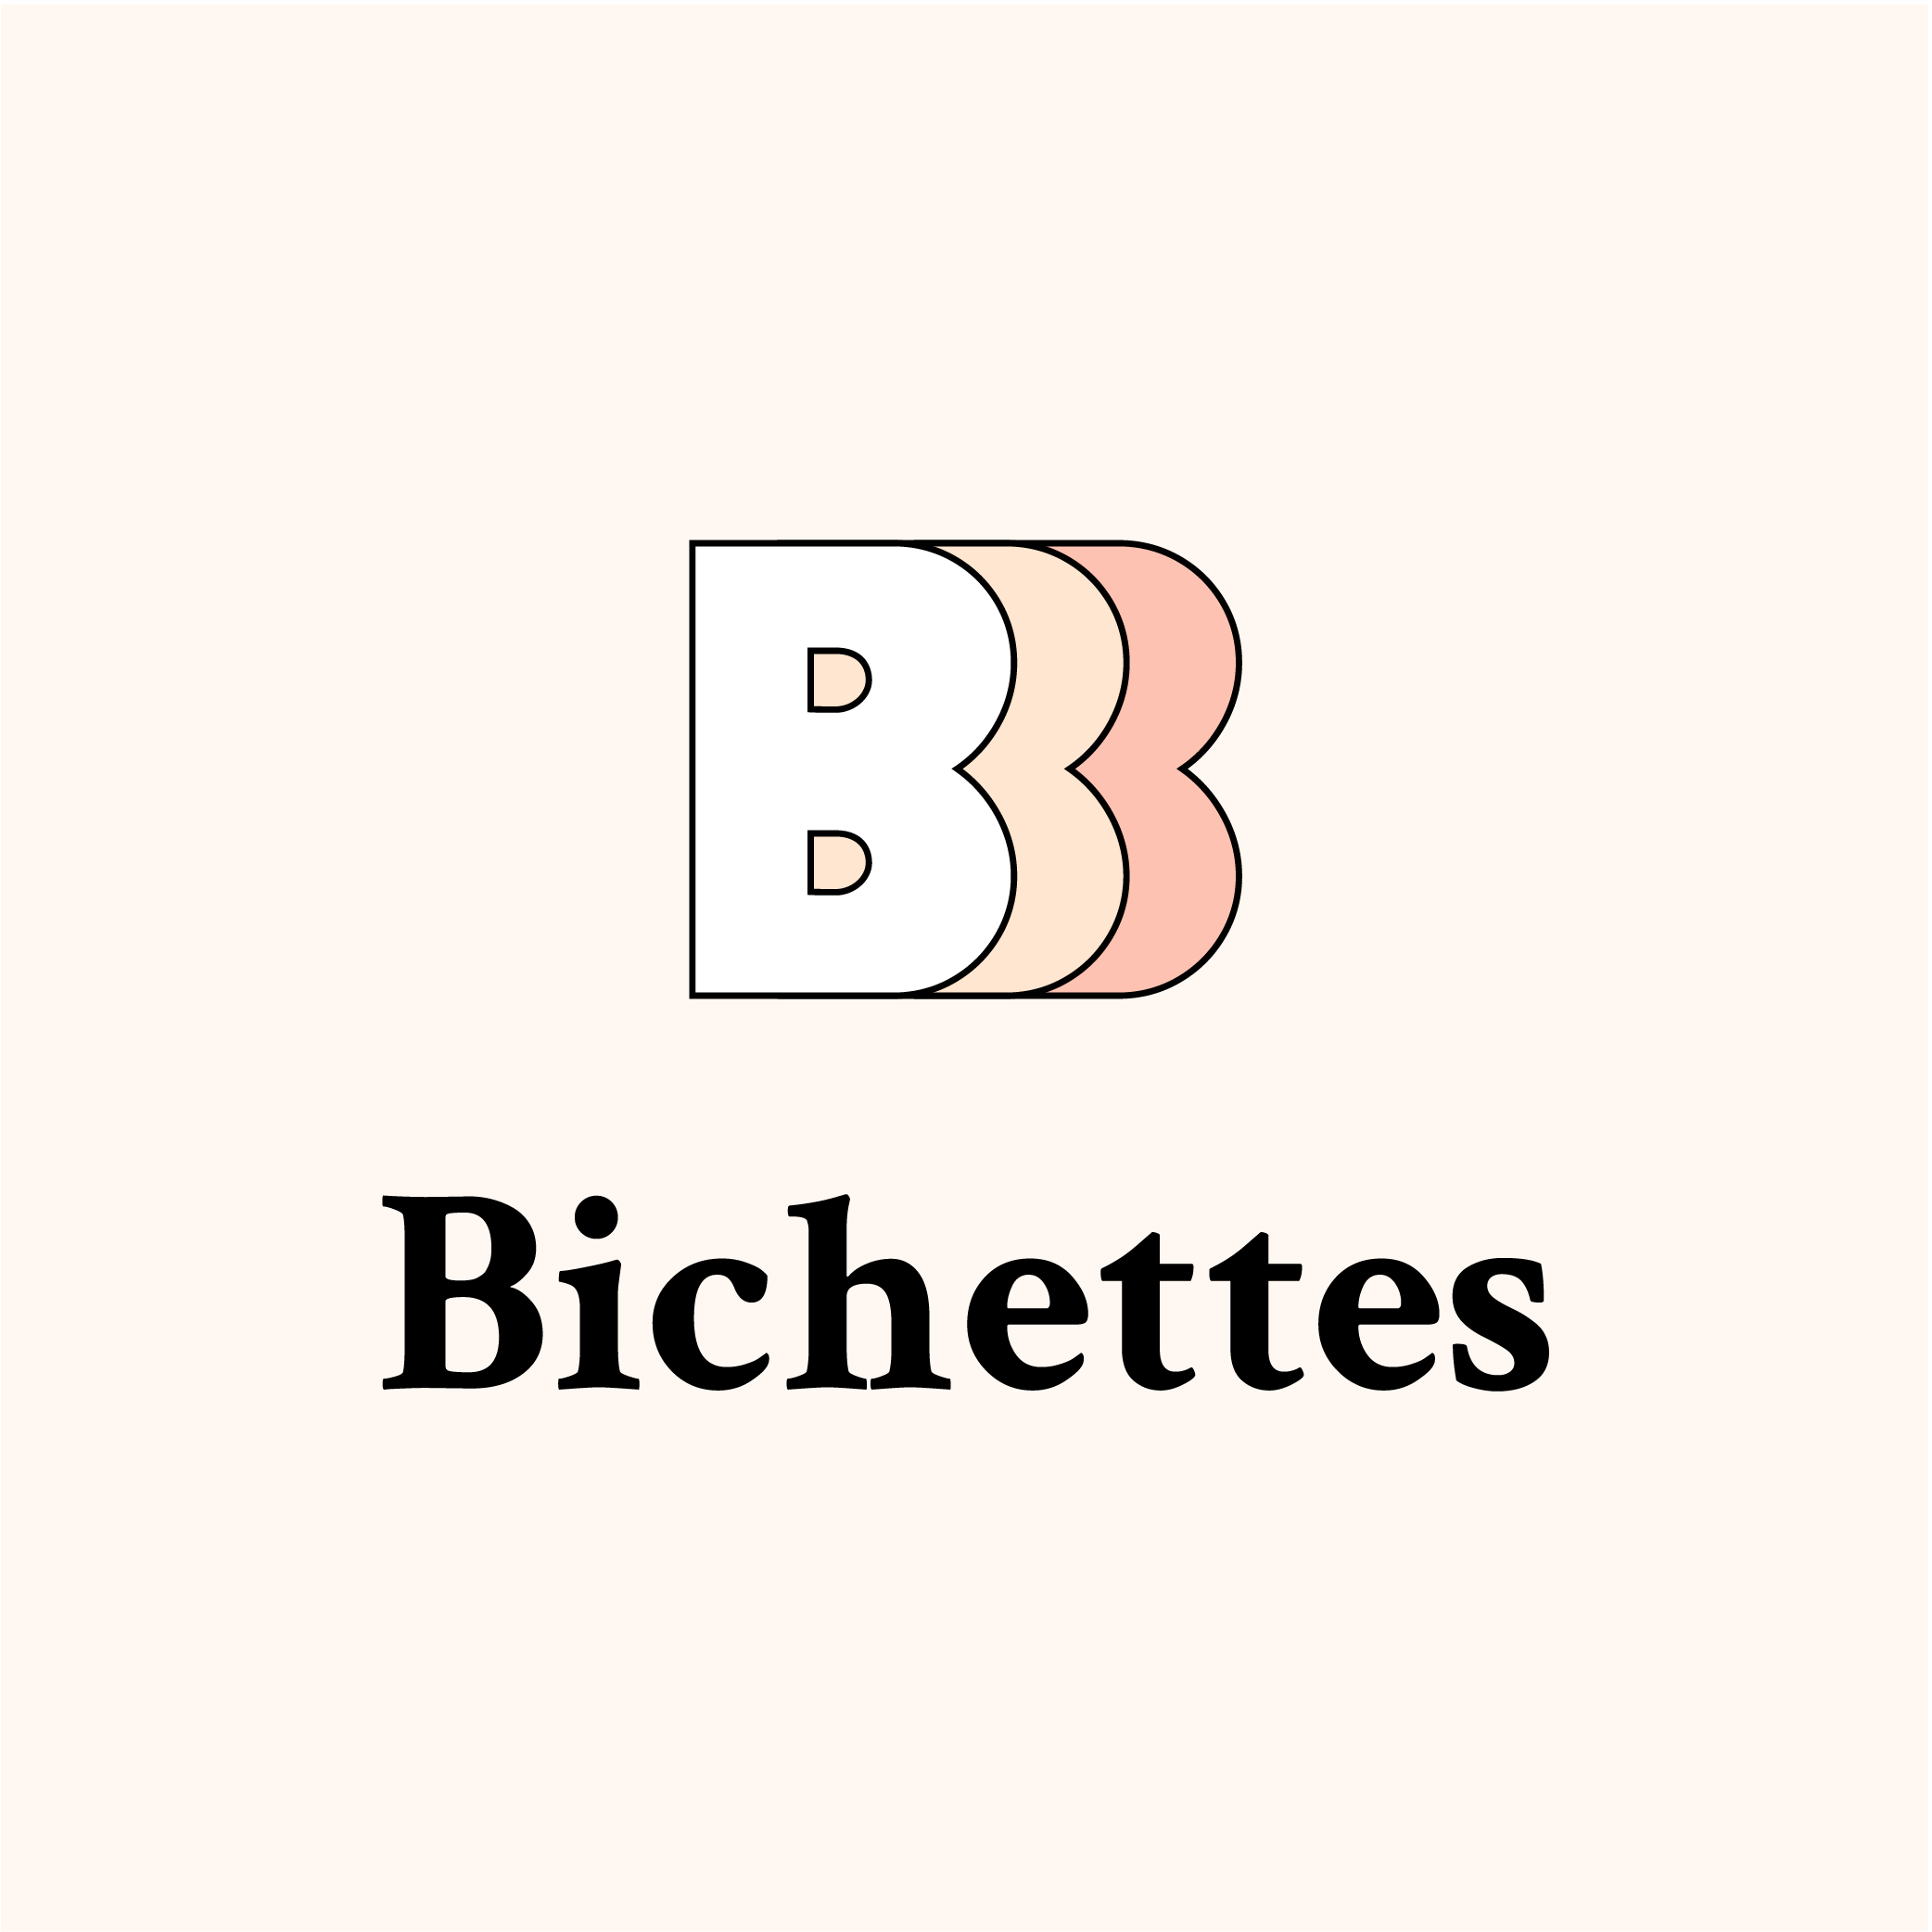 xioute Bichettes restaurant